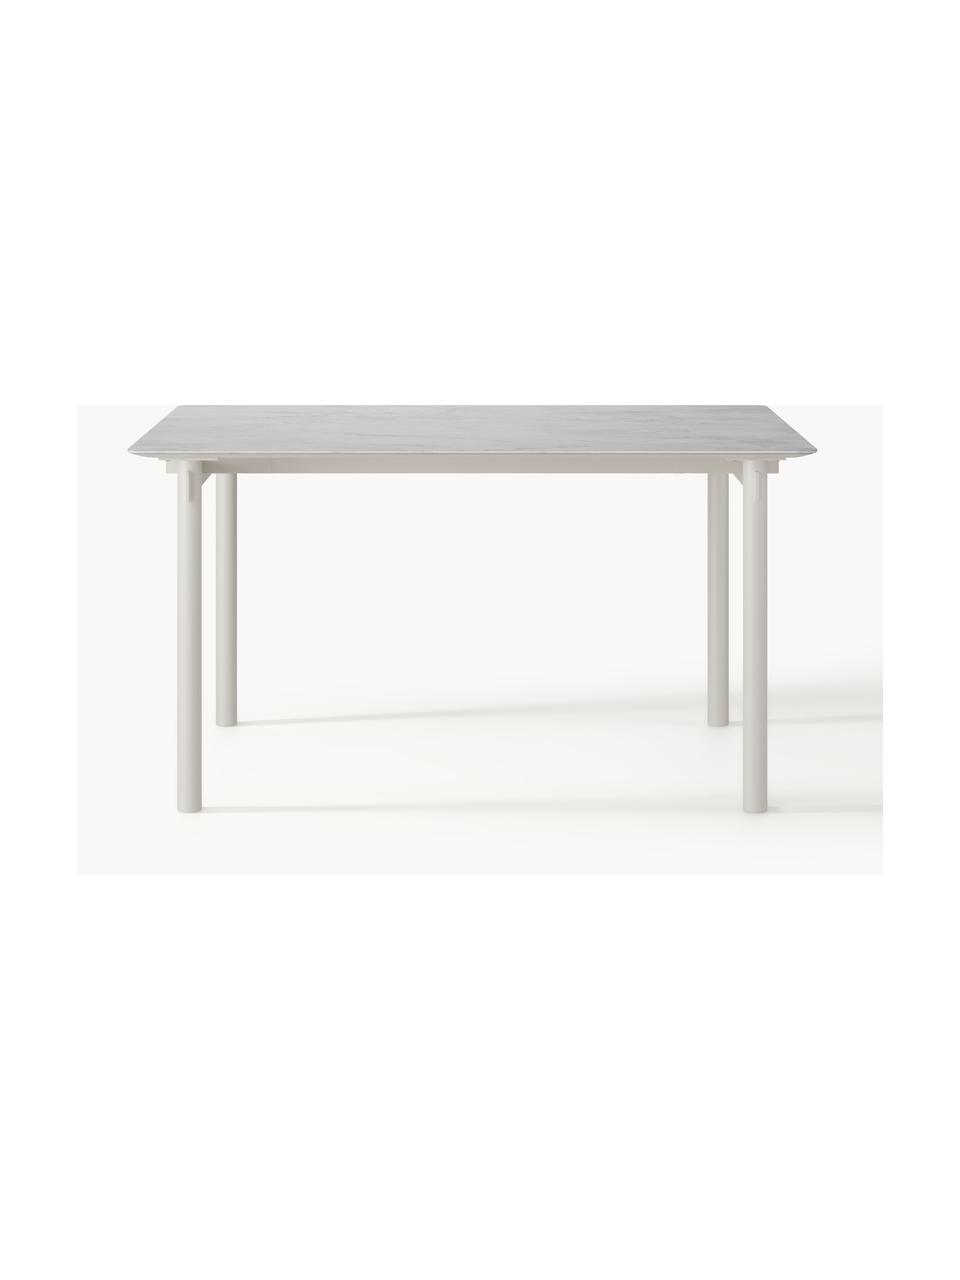 Esstisch Mavi, in verschiedenen Größen, Tischplatte: Keramik, Beine: Metall, pulverbeschichtet, Weiß, B 140 x T 90 cm